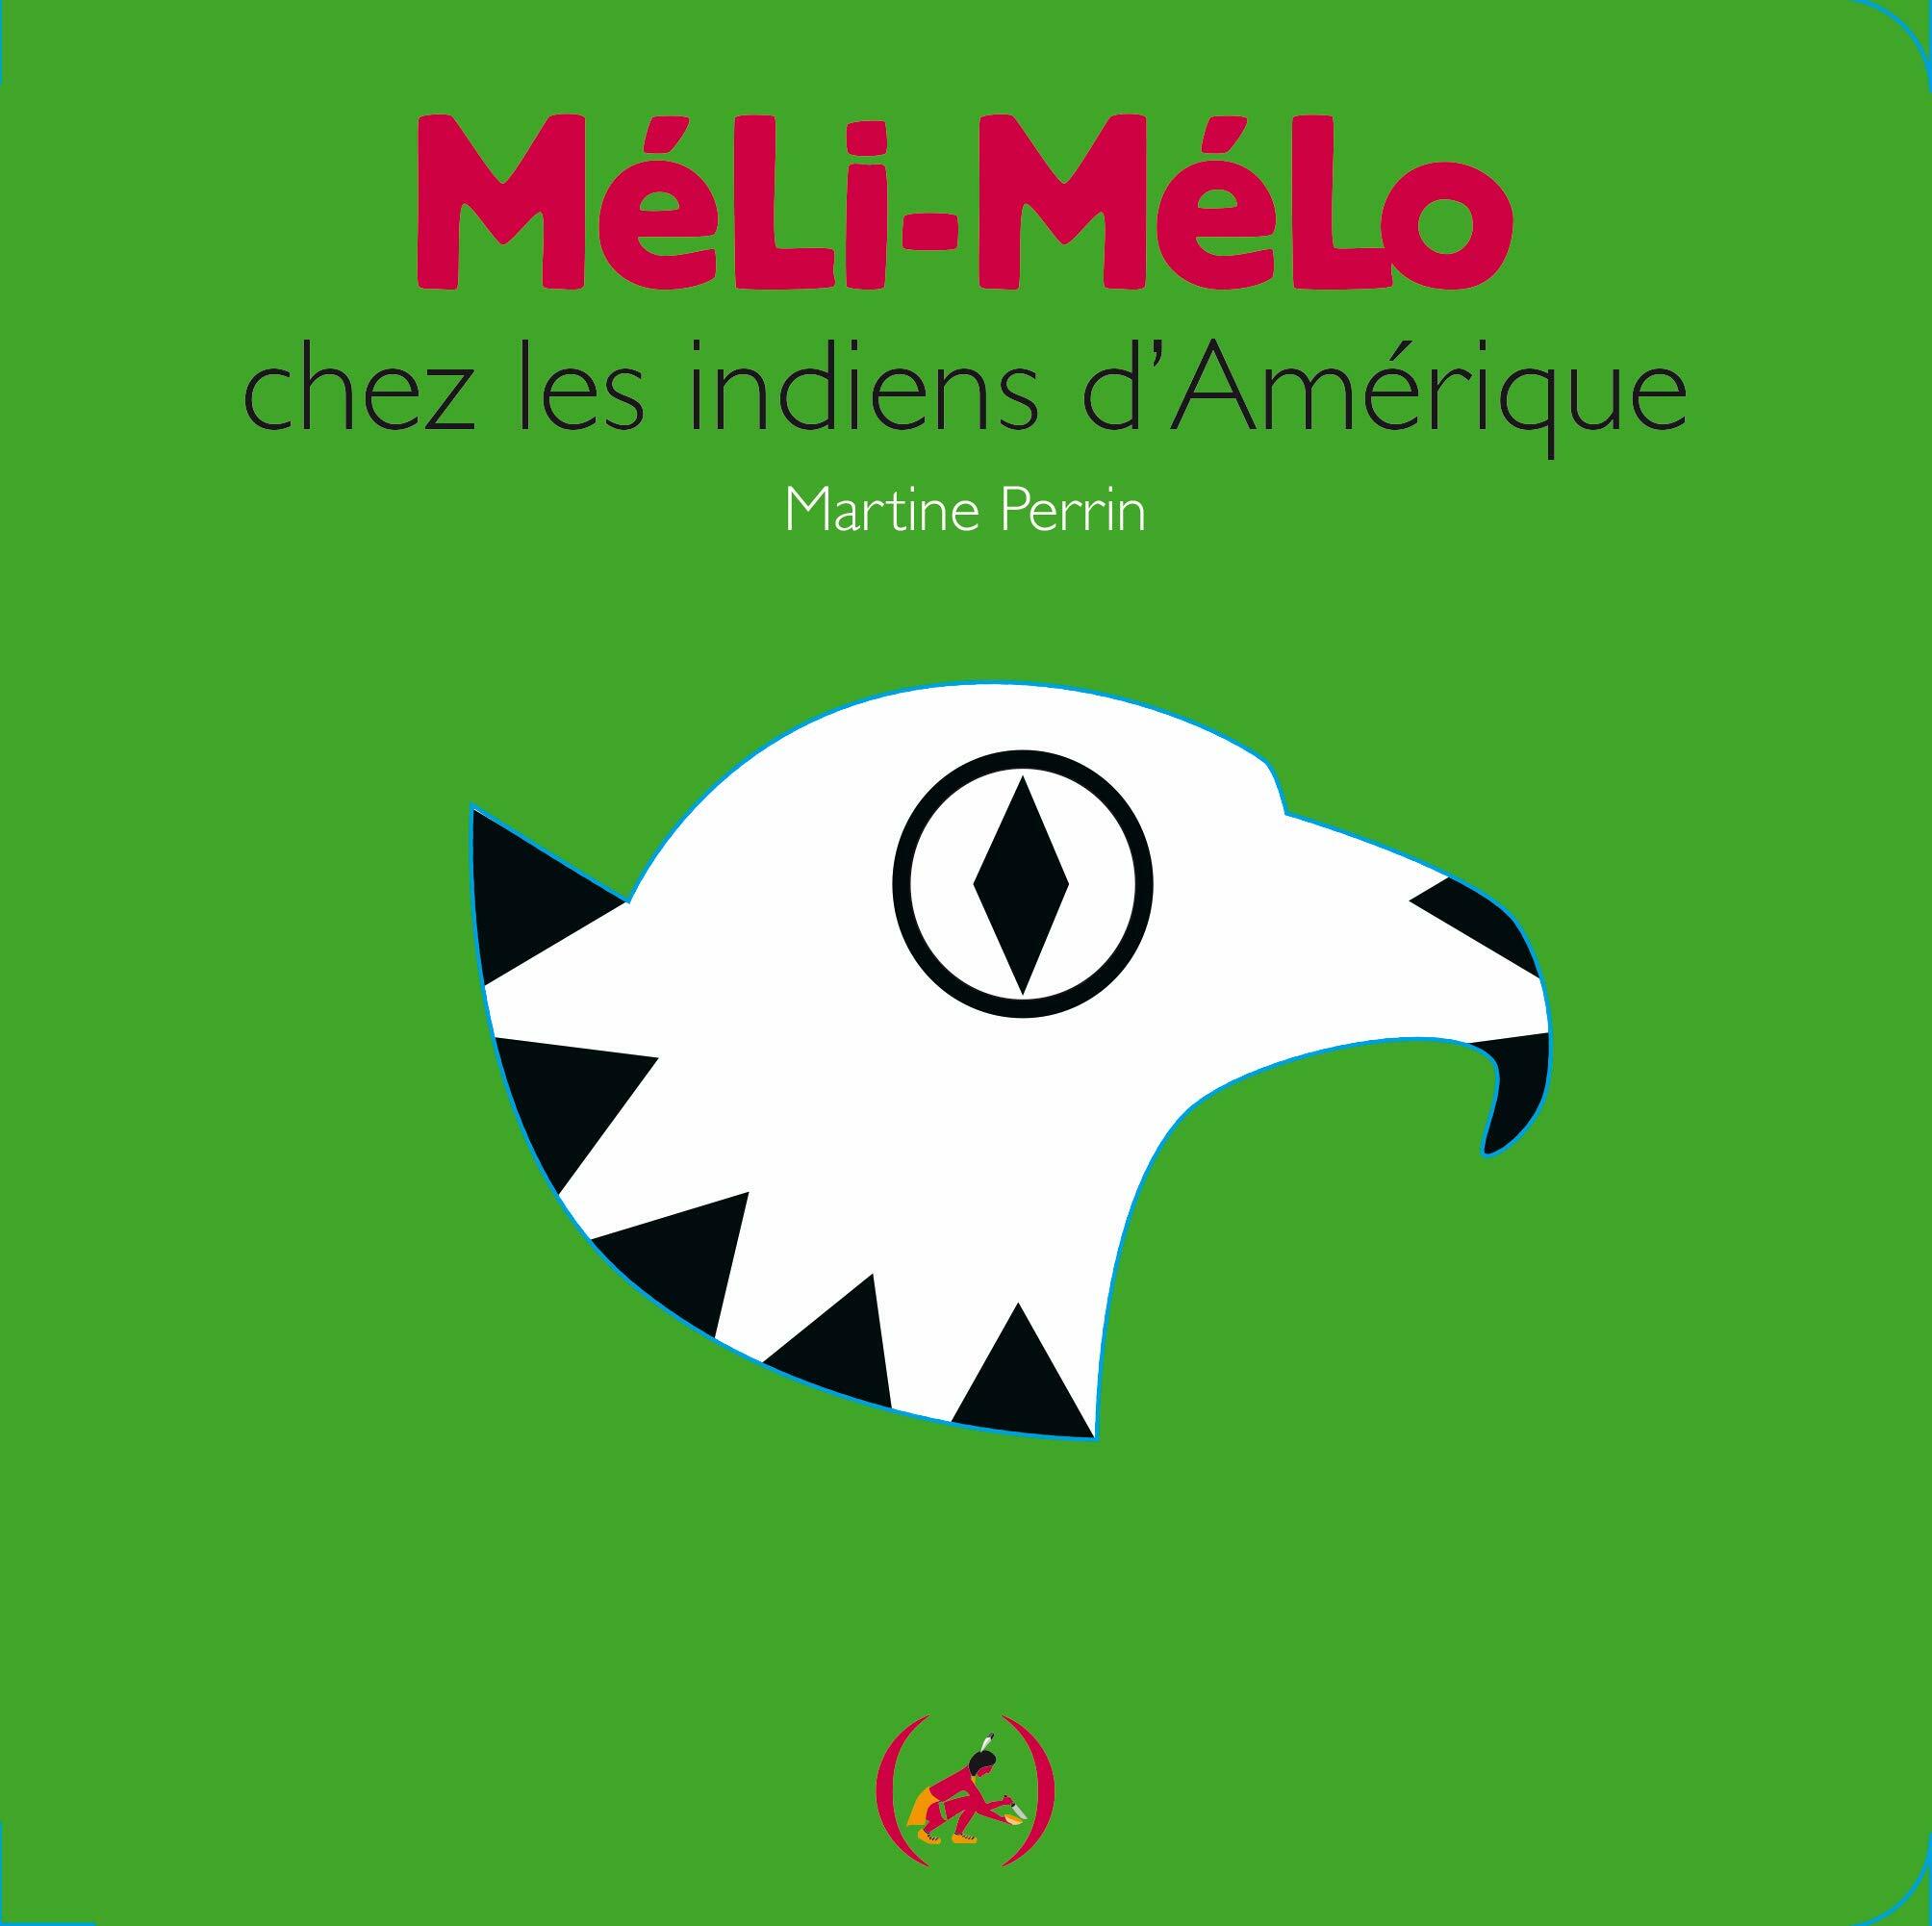 Meli-melo chez les Indiens dAmerique (Paperback)